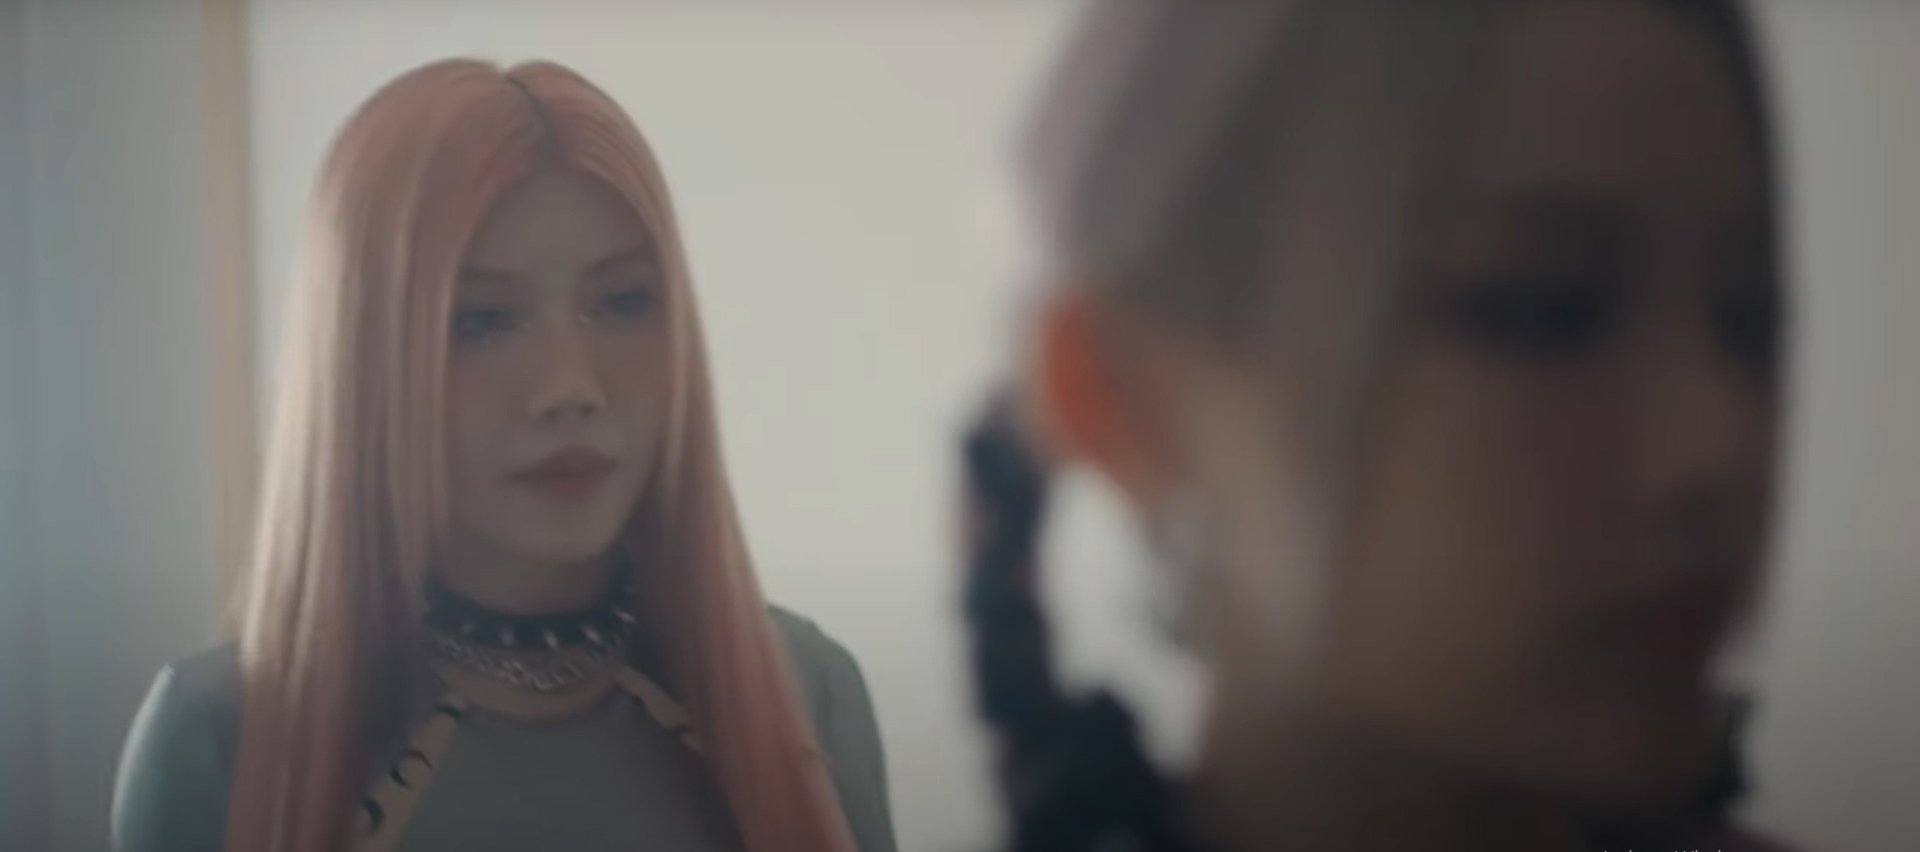 LUNAS gây sốt với Teaser MV Moonlight vọn vẻn 20 giây - ảnh 2